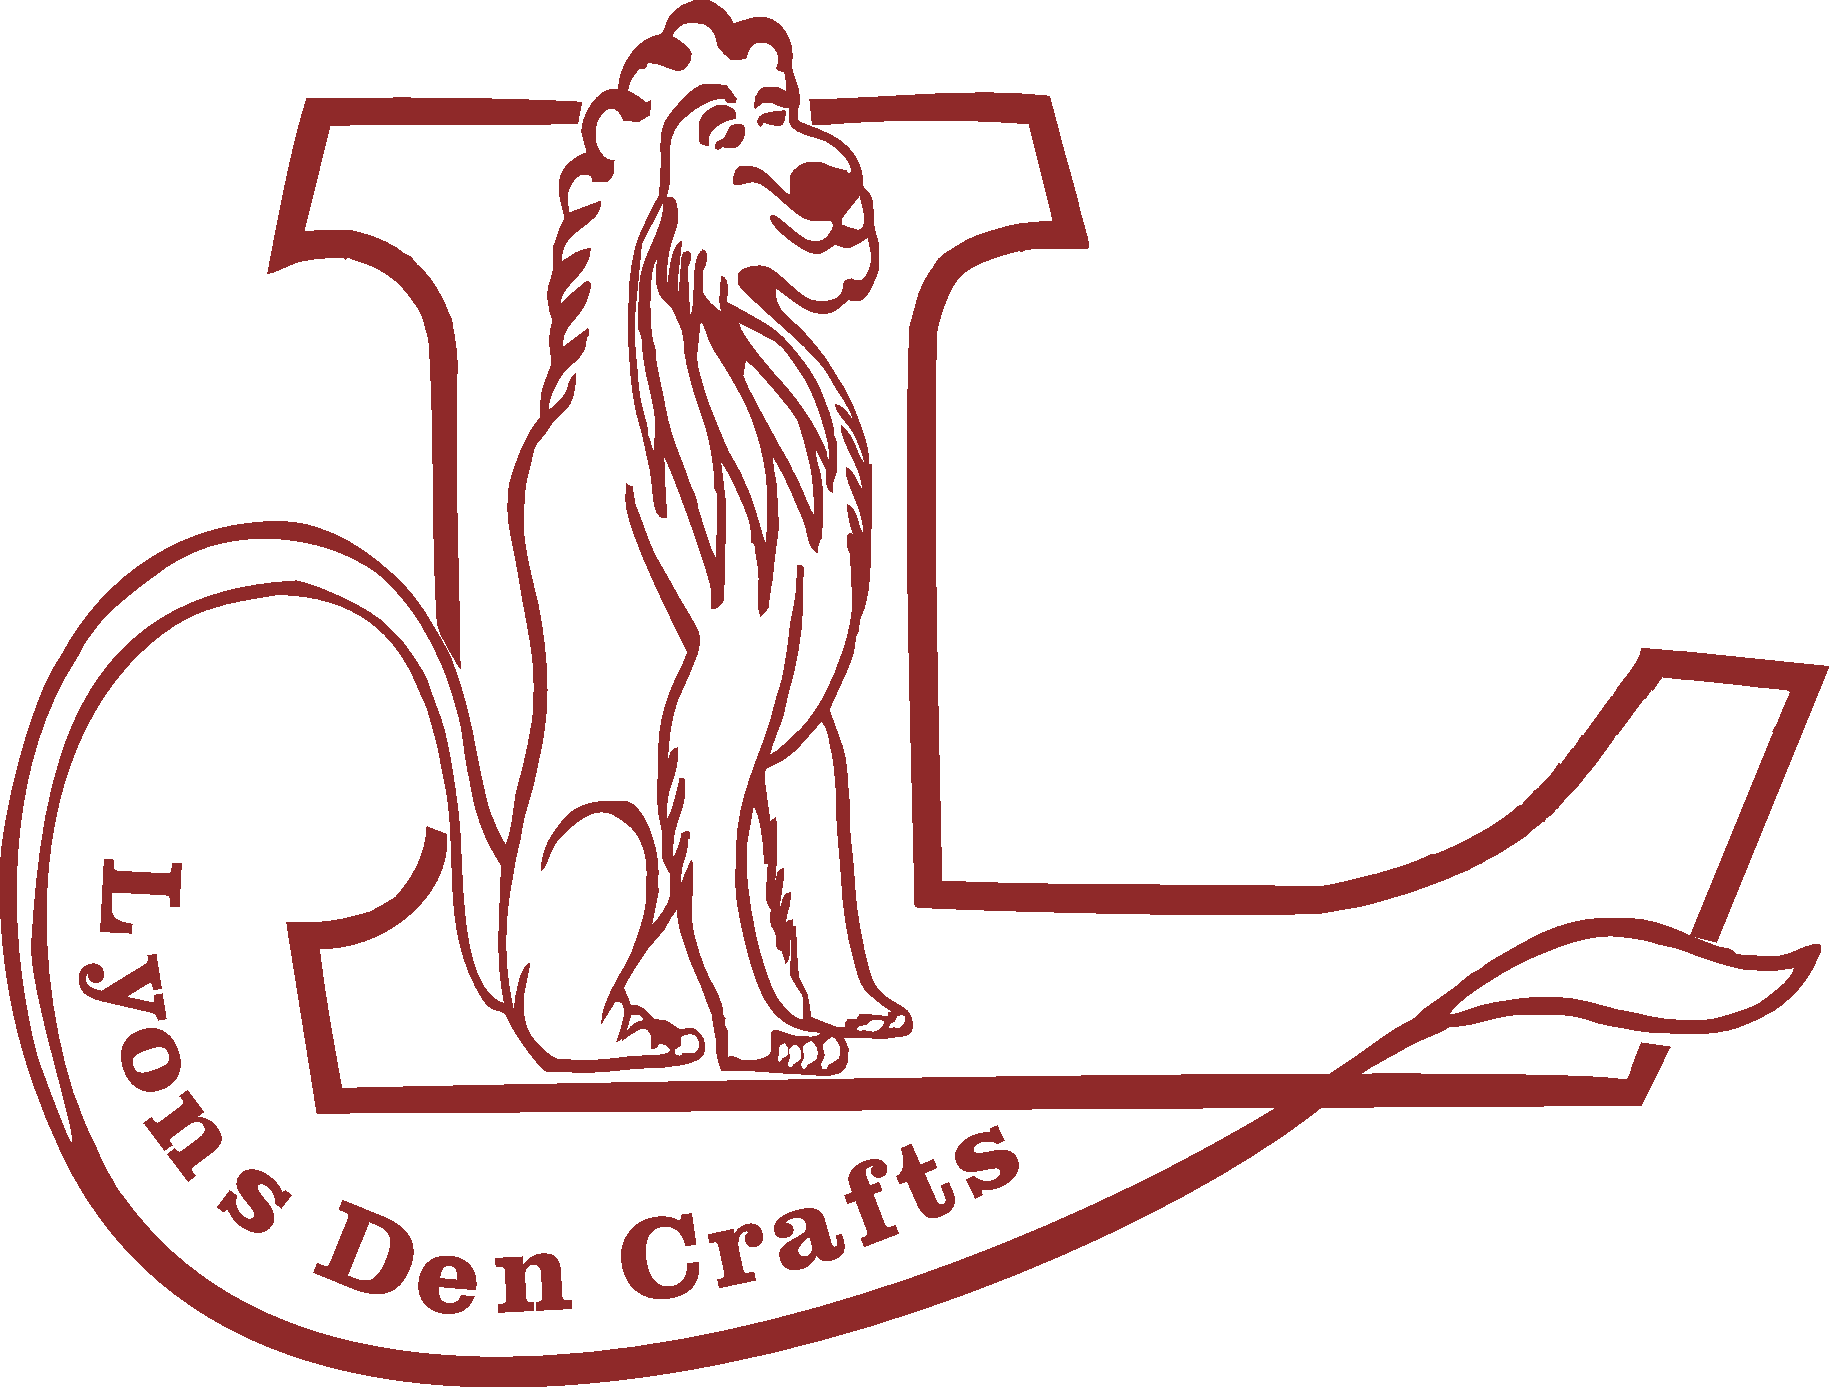 Lyons-Den-Crafts